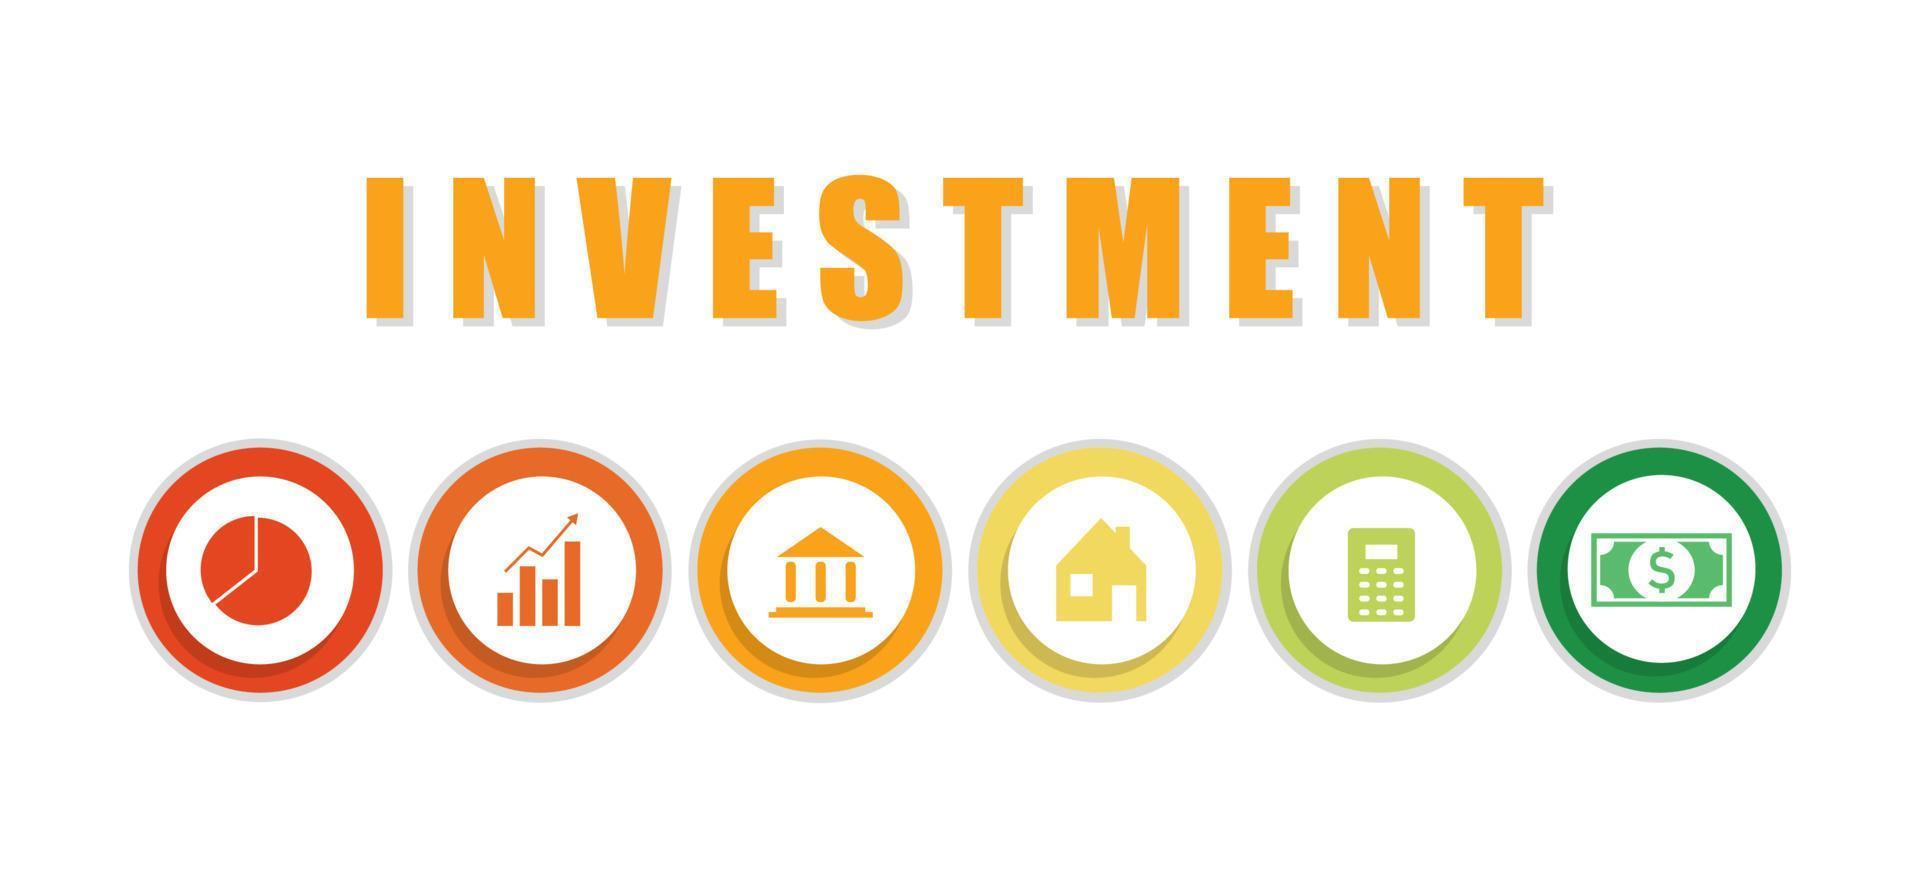 investitions-, vermögens- und geschäftskonzept. symbole wie immobilien, buchhaltung, grafikaufbau, geld und finanzen sowie bankwesen auf weißem hintergrund für präsentation, webbanner, artikel. vektor